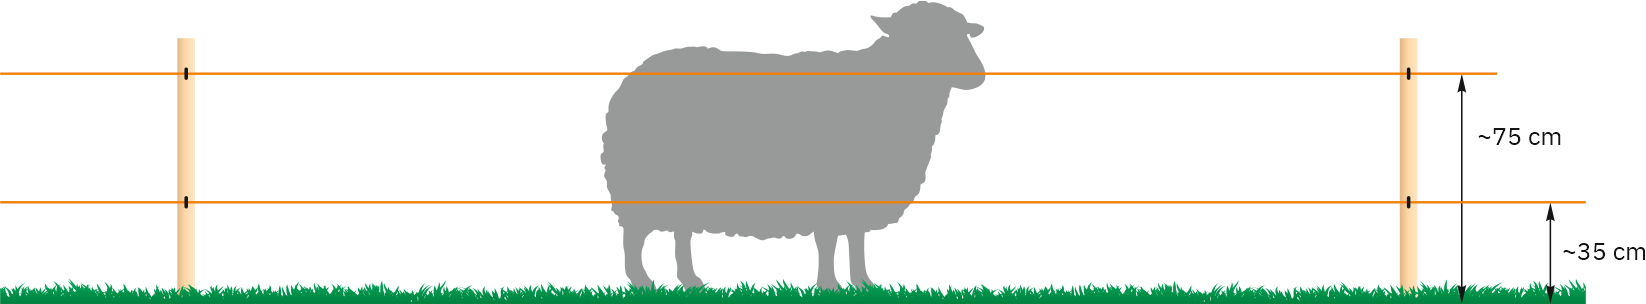 Înălțimile firelor pentru oi